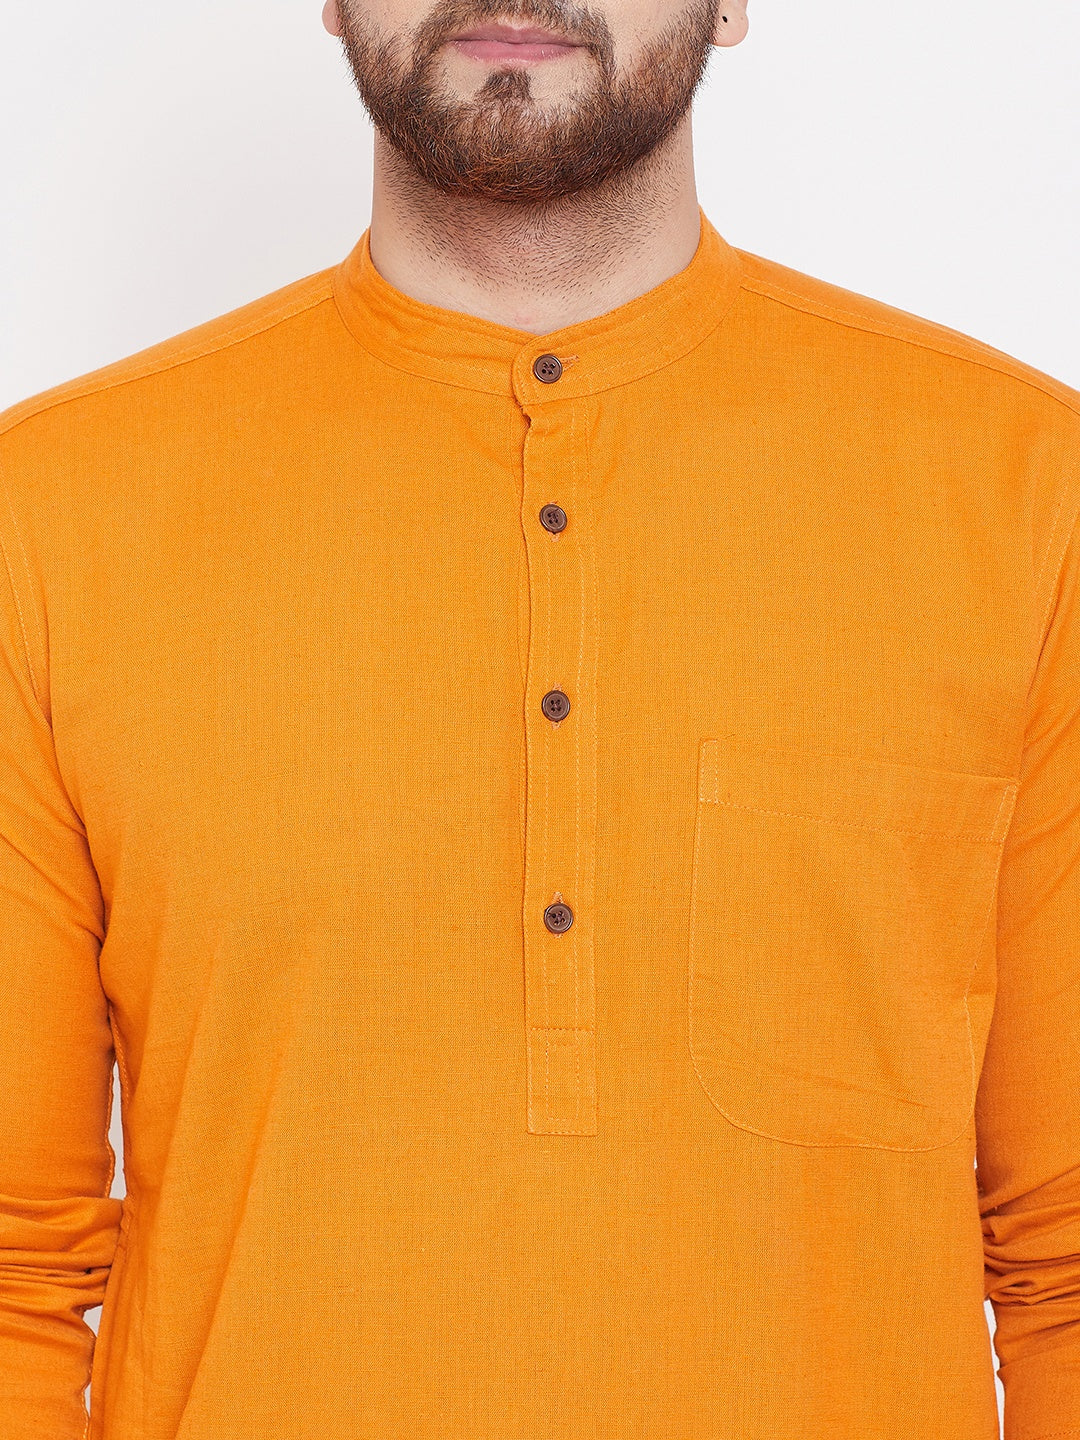 Men's Pure Cotton Saffron Kurta - Even Apparels